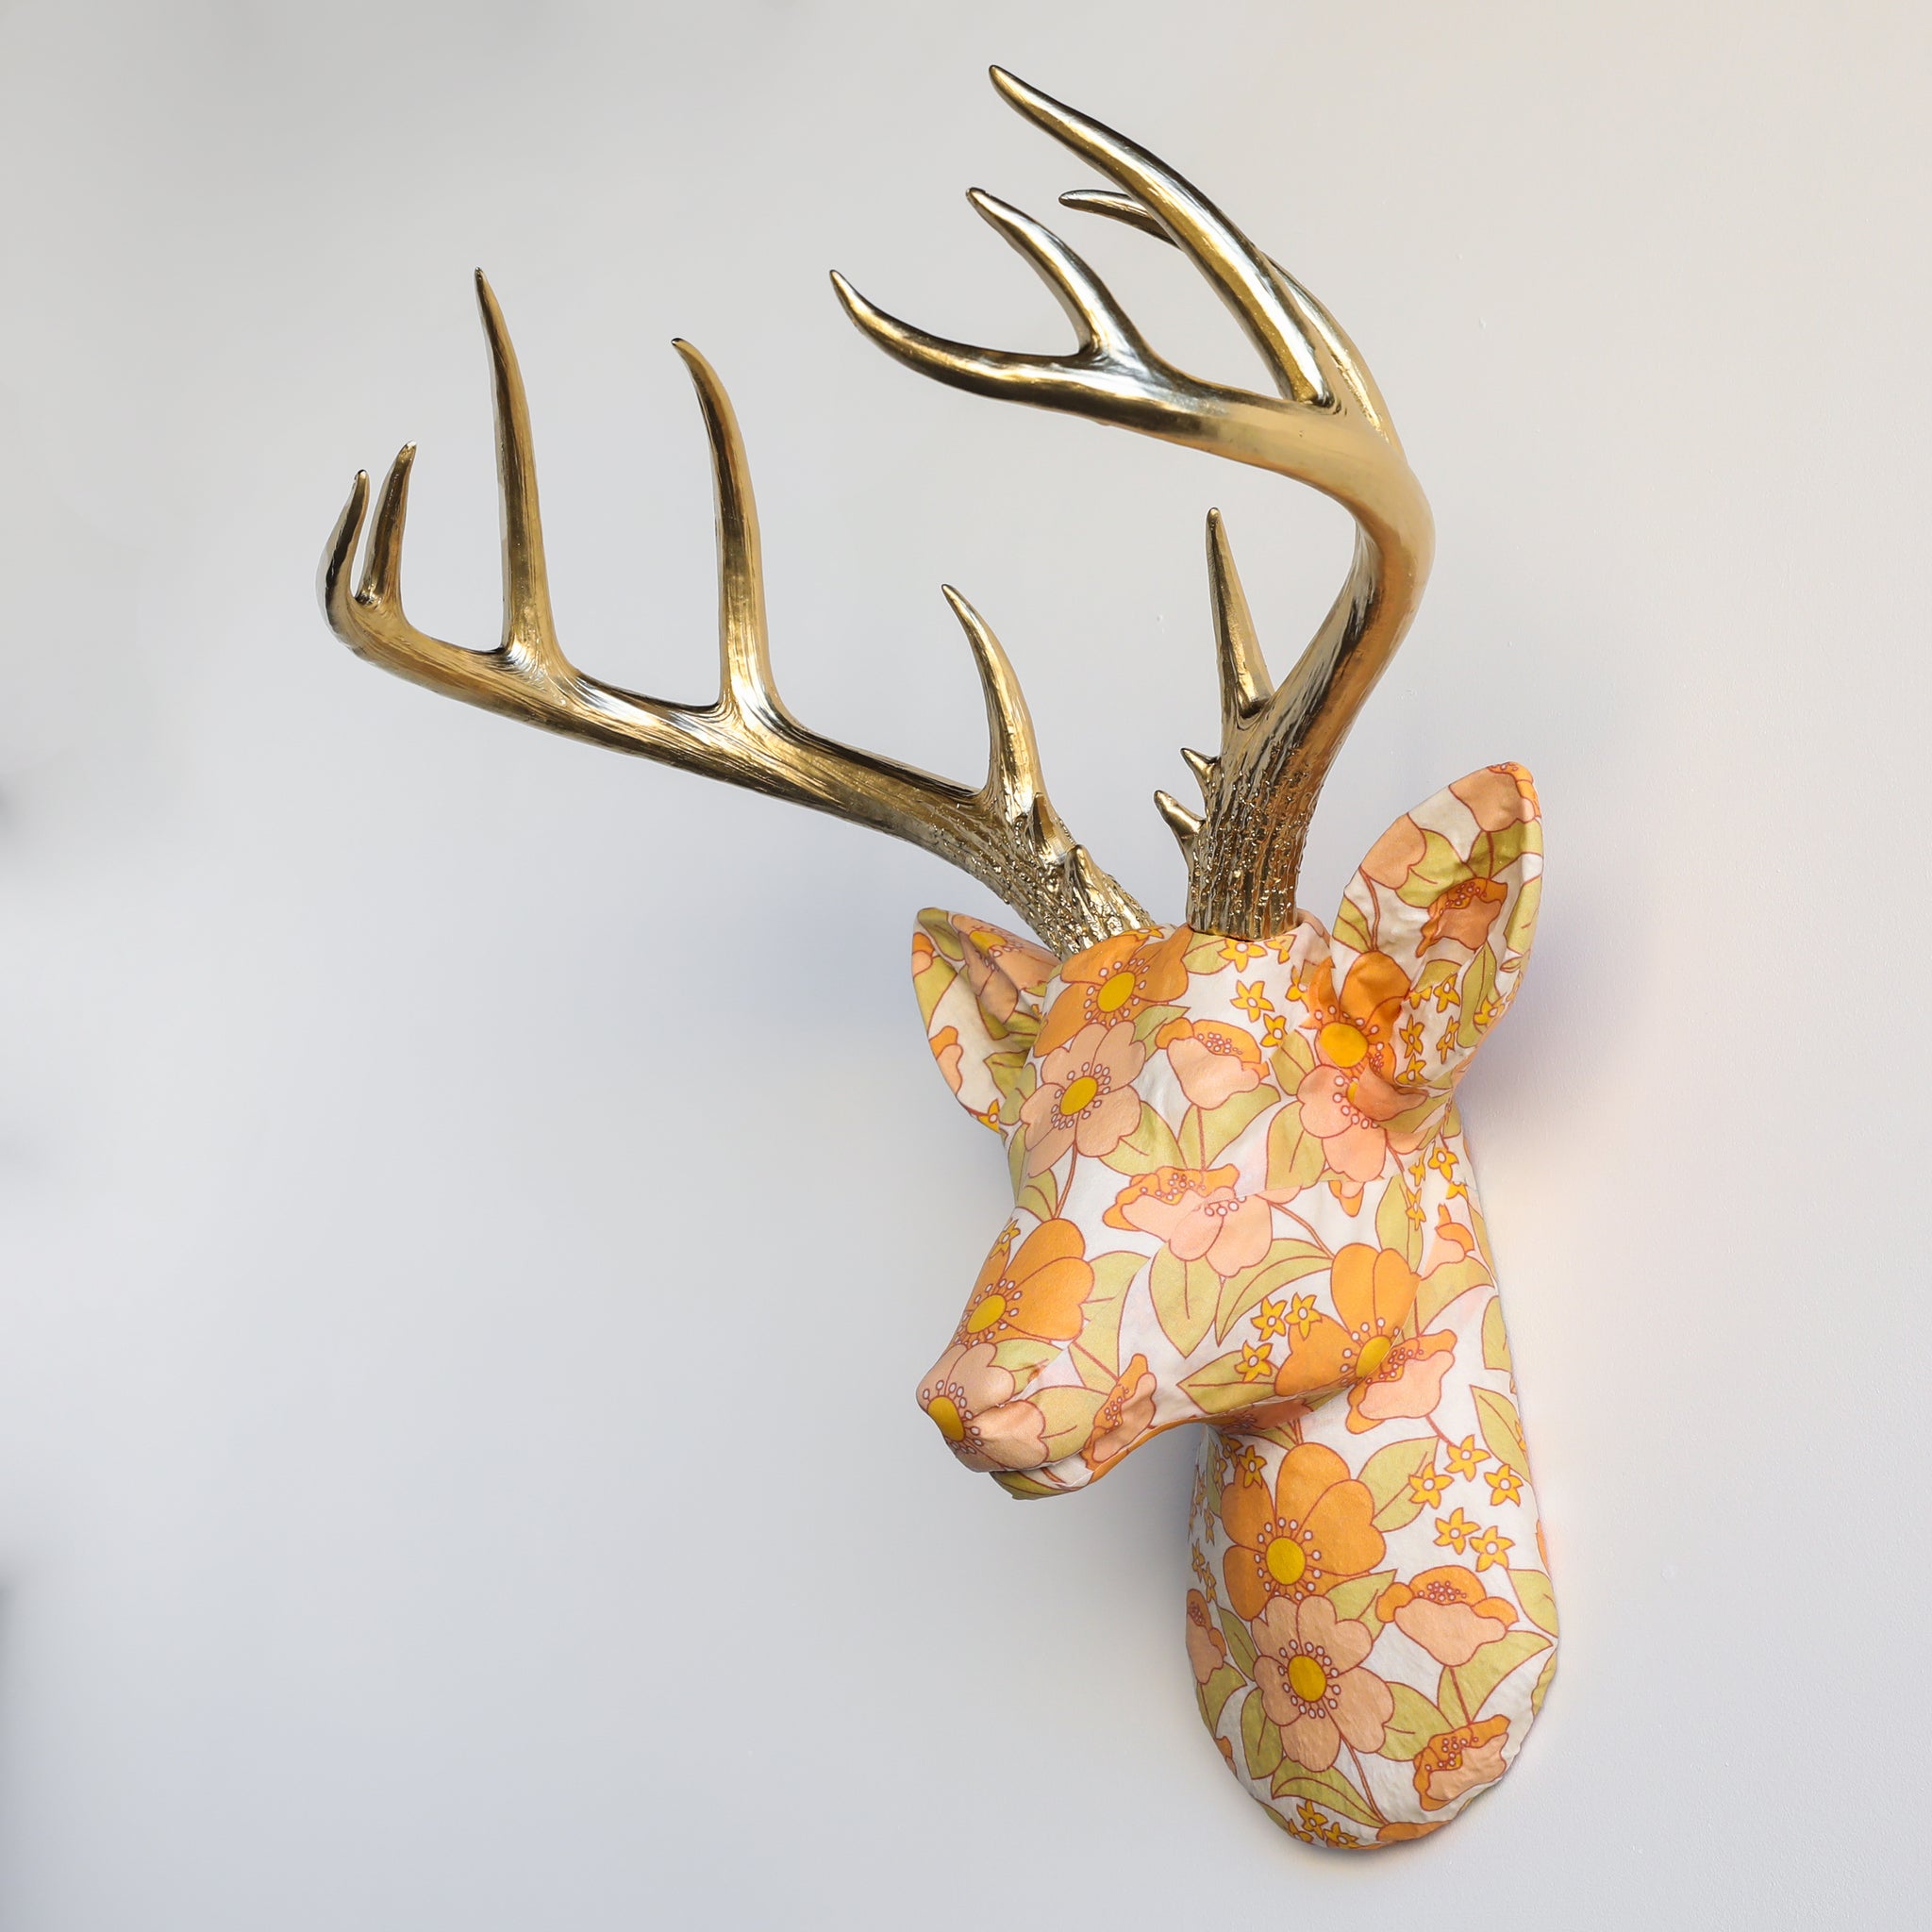 Fabric Deer Head - Retro Floral Pattern Fabric Deer Head